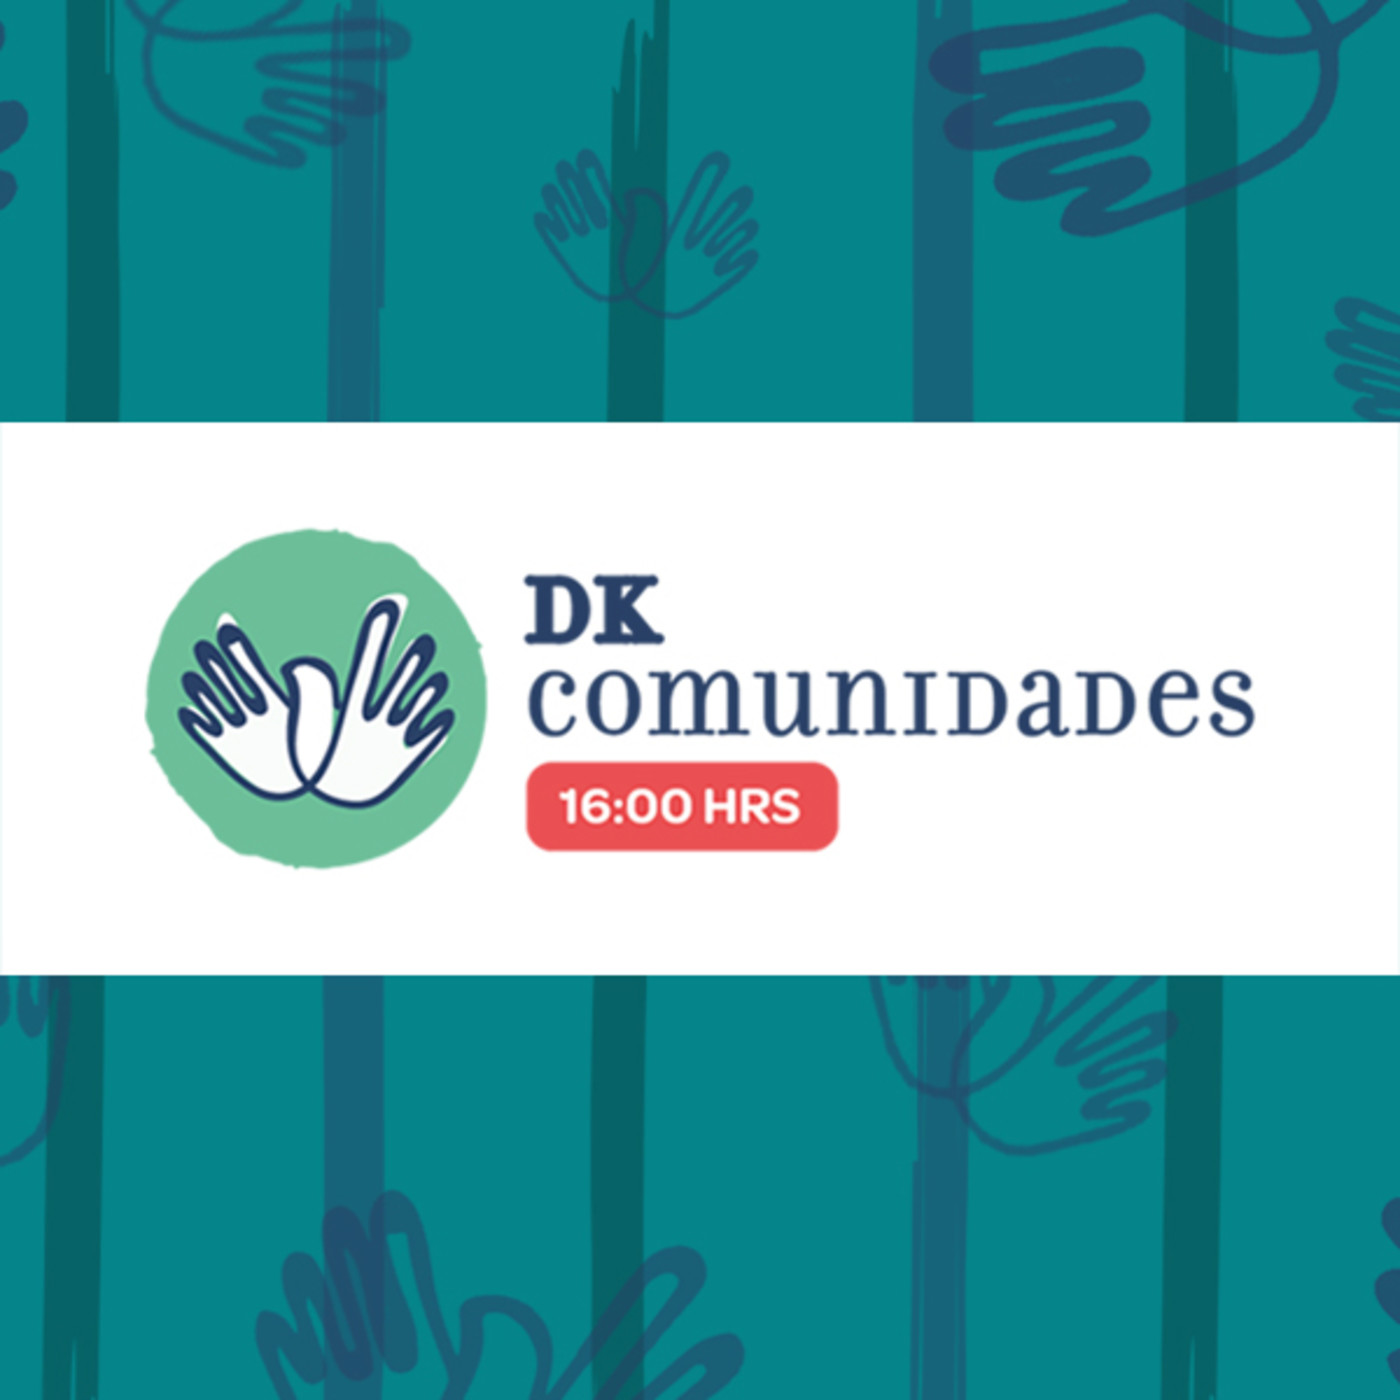 DK Comunidades - Lazos de amor mariano